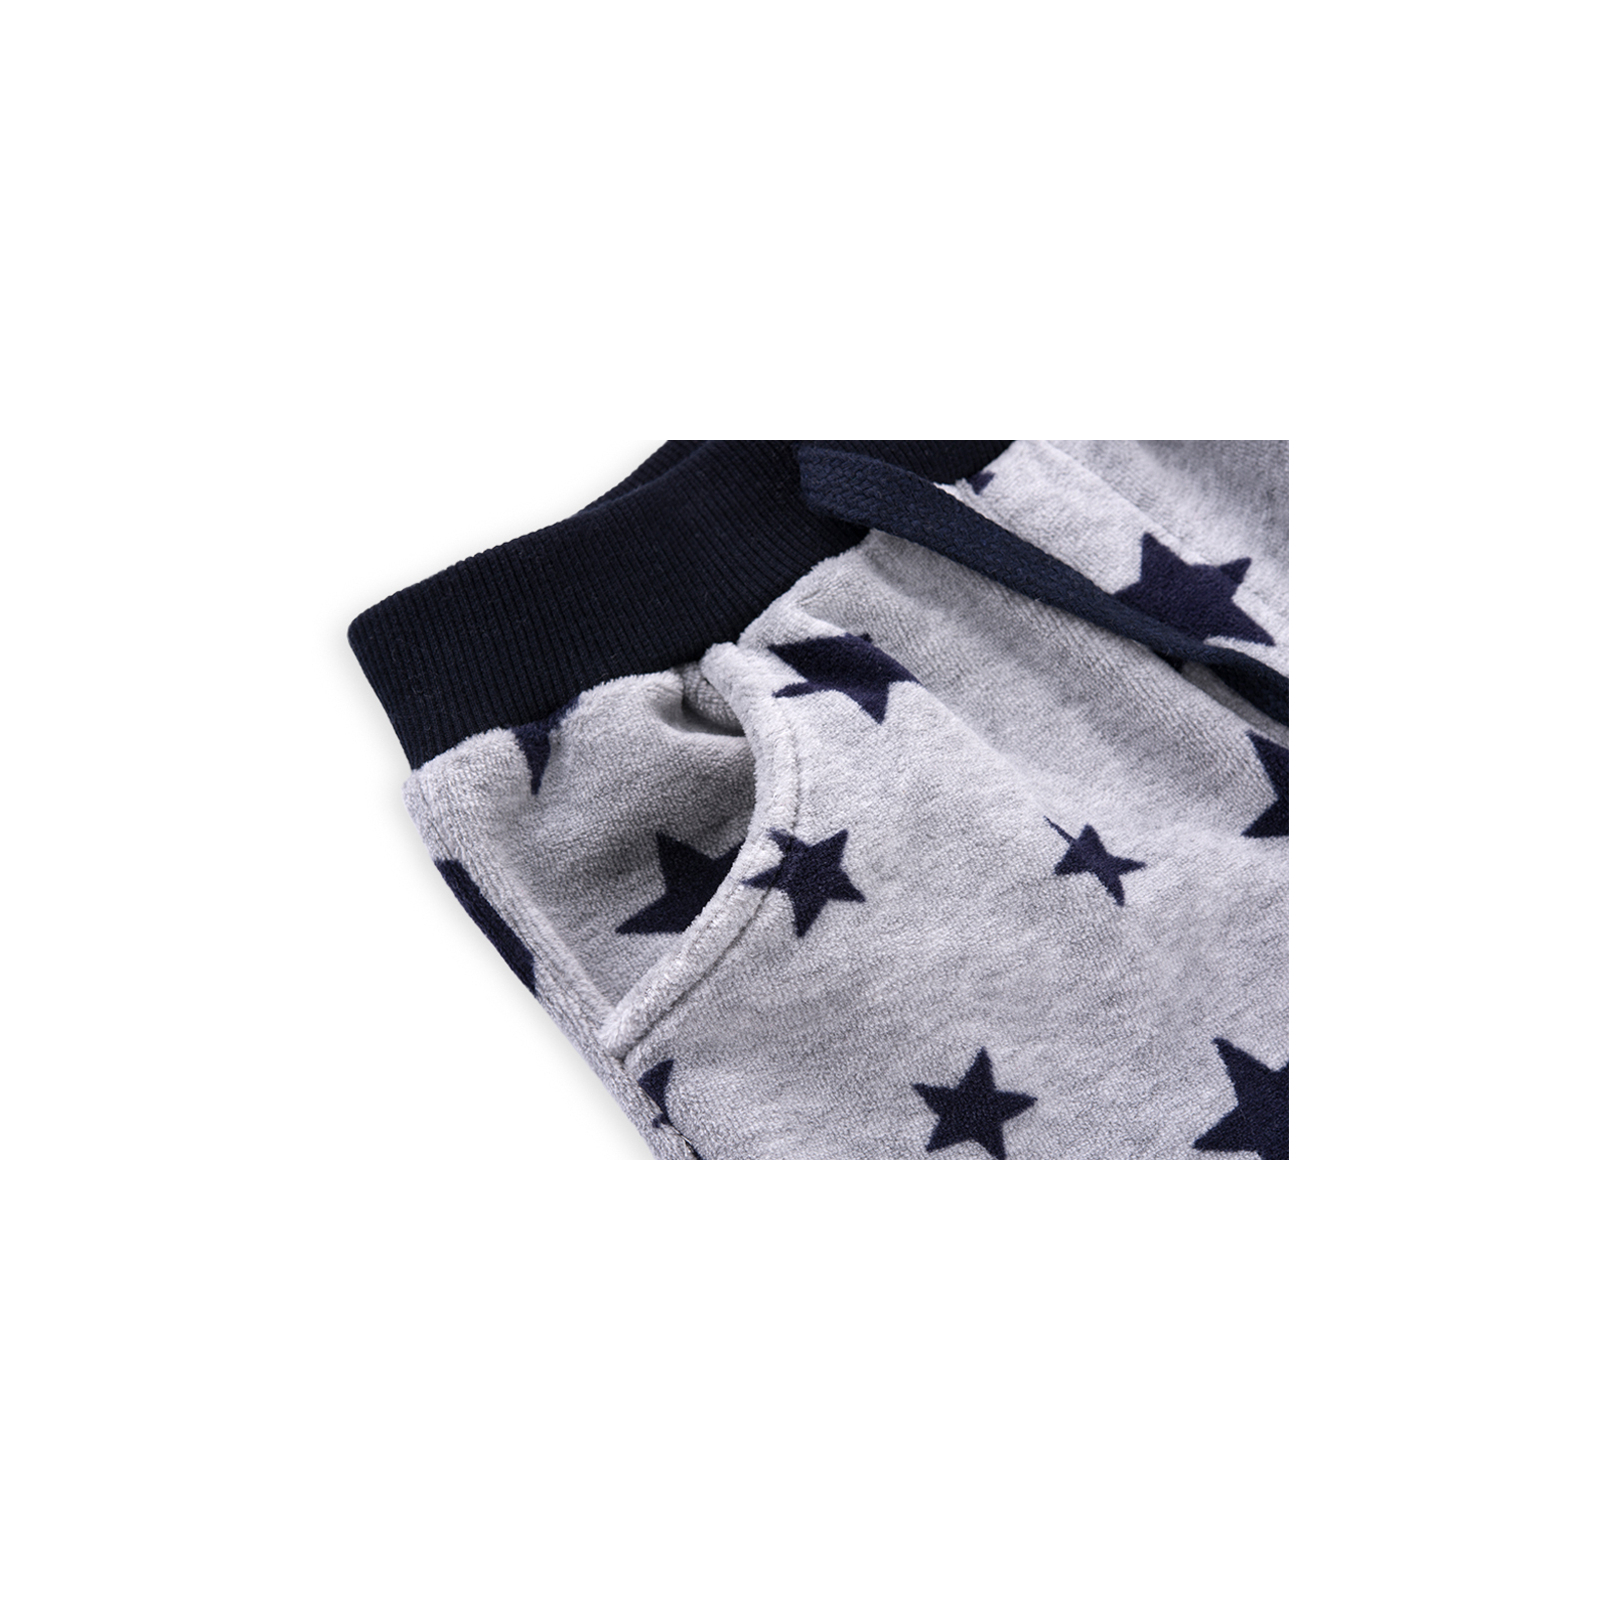 Набор детской одежды Breeze велюровый с вертолетом и штанишками в звездочку (8113-74/B-dark blue) изображение 4